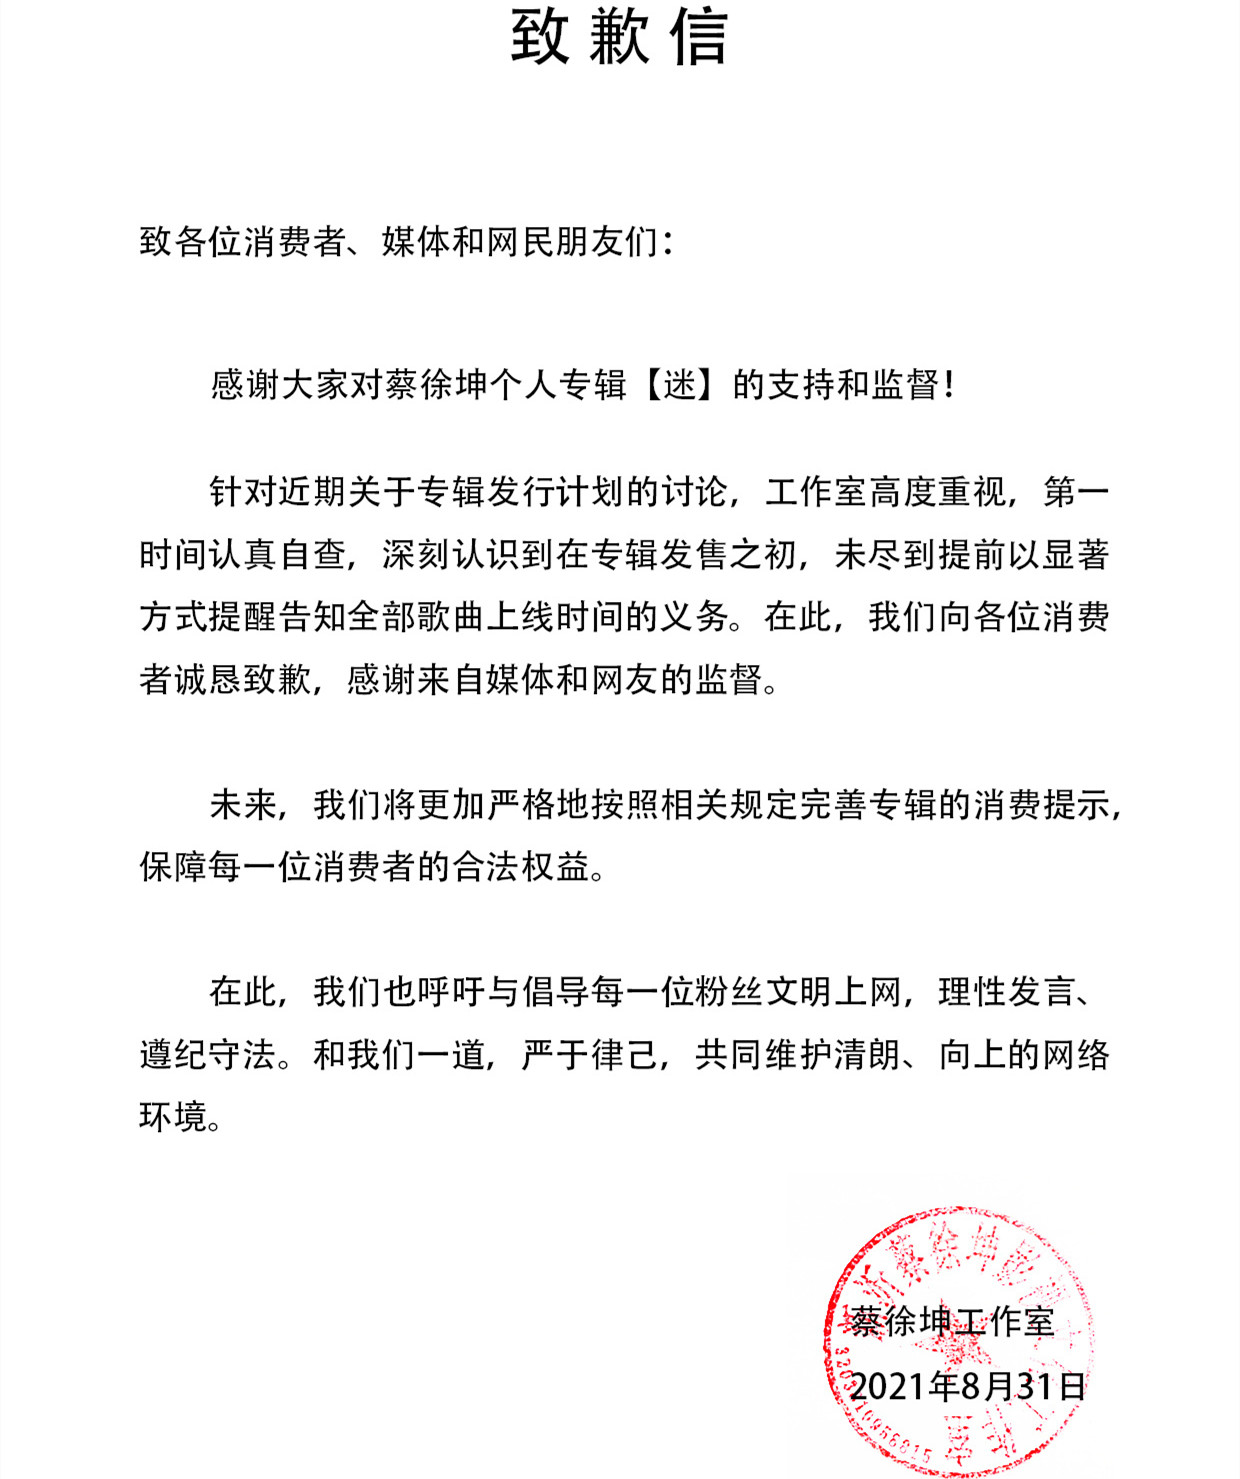 蔡徐坤工作室道歉是怎么回事，关于蔡徐坤工作室道歉是怎么回事的新消息。